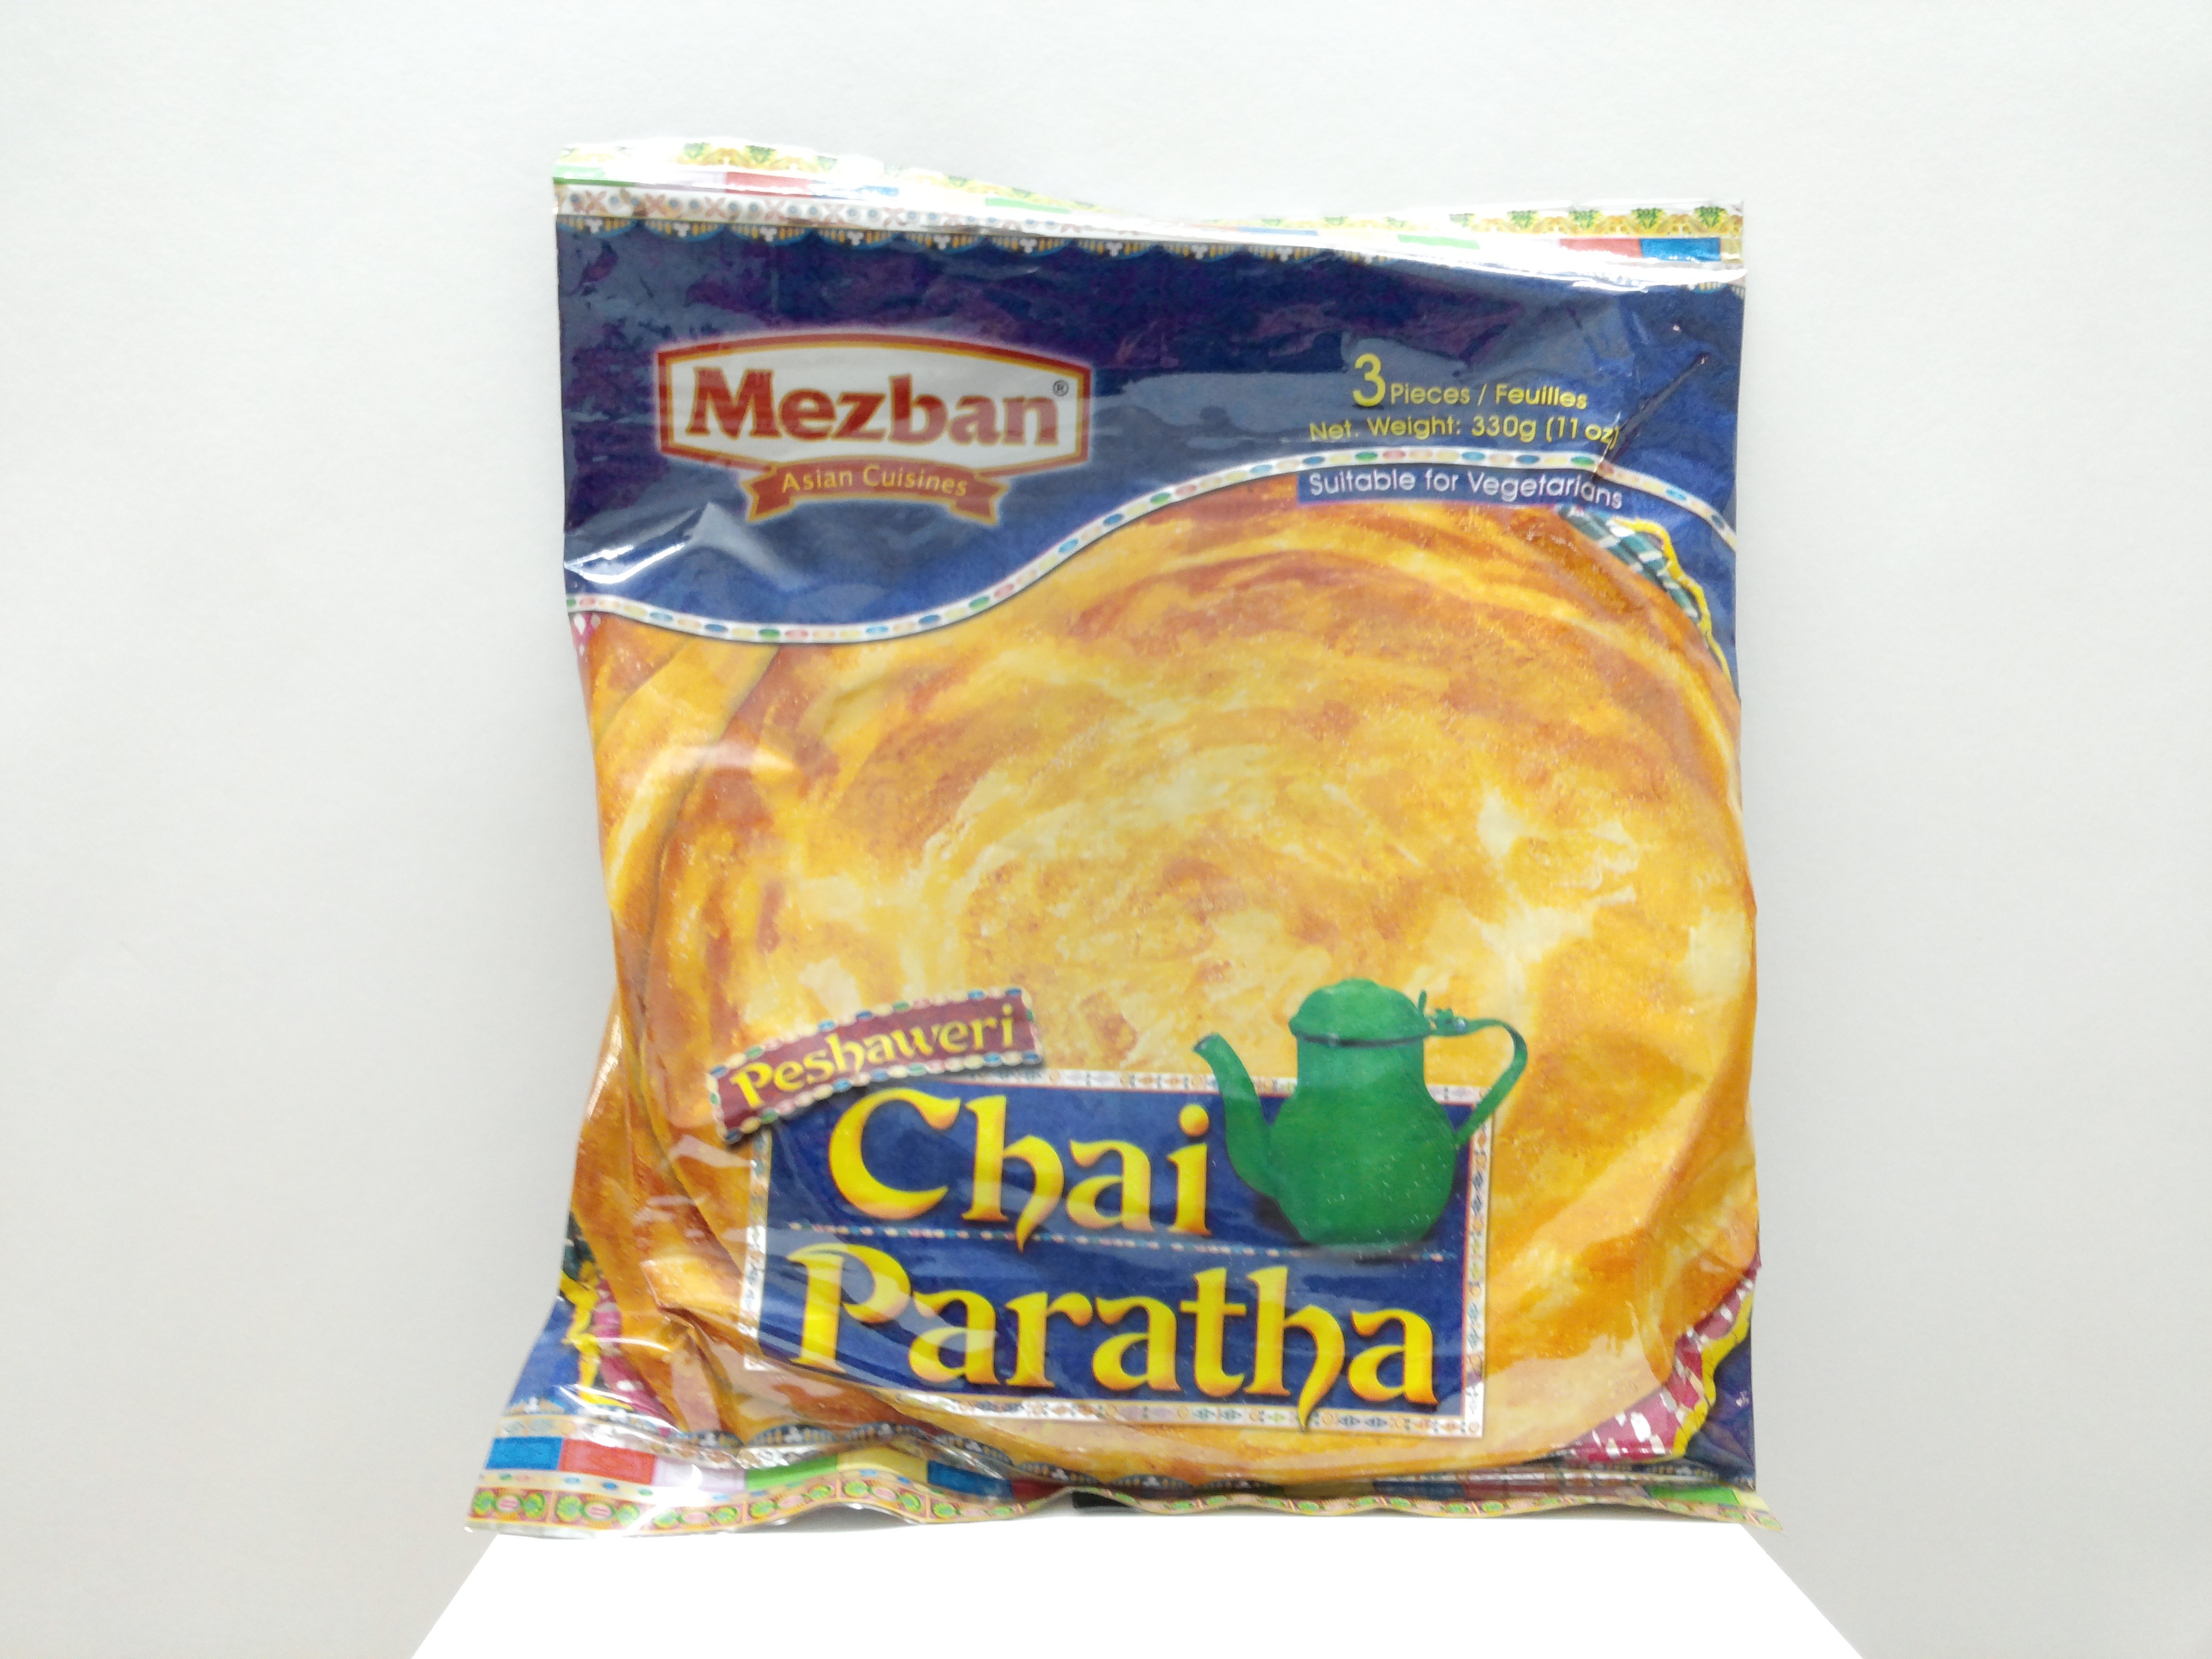 Mezban chai Paratha 3 pcs 11 oz 